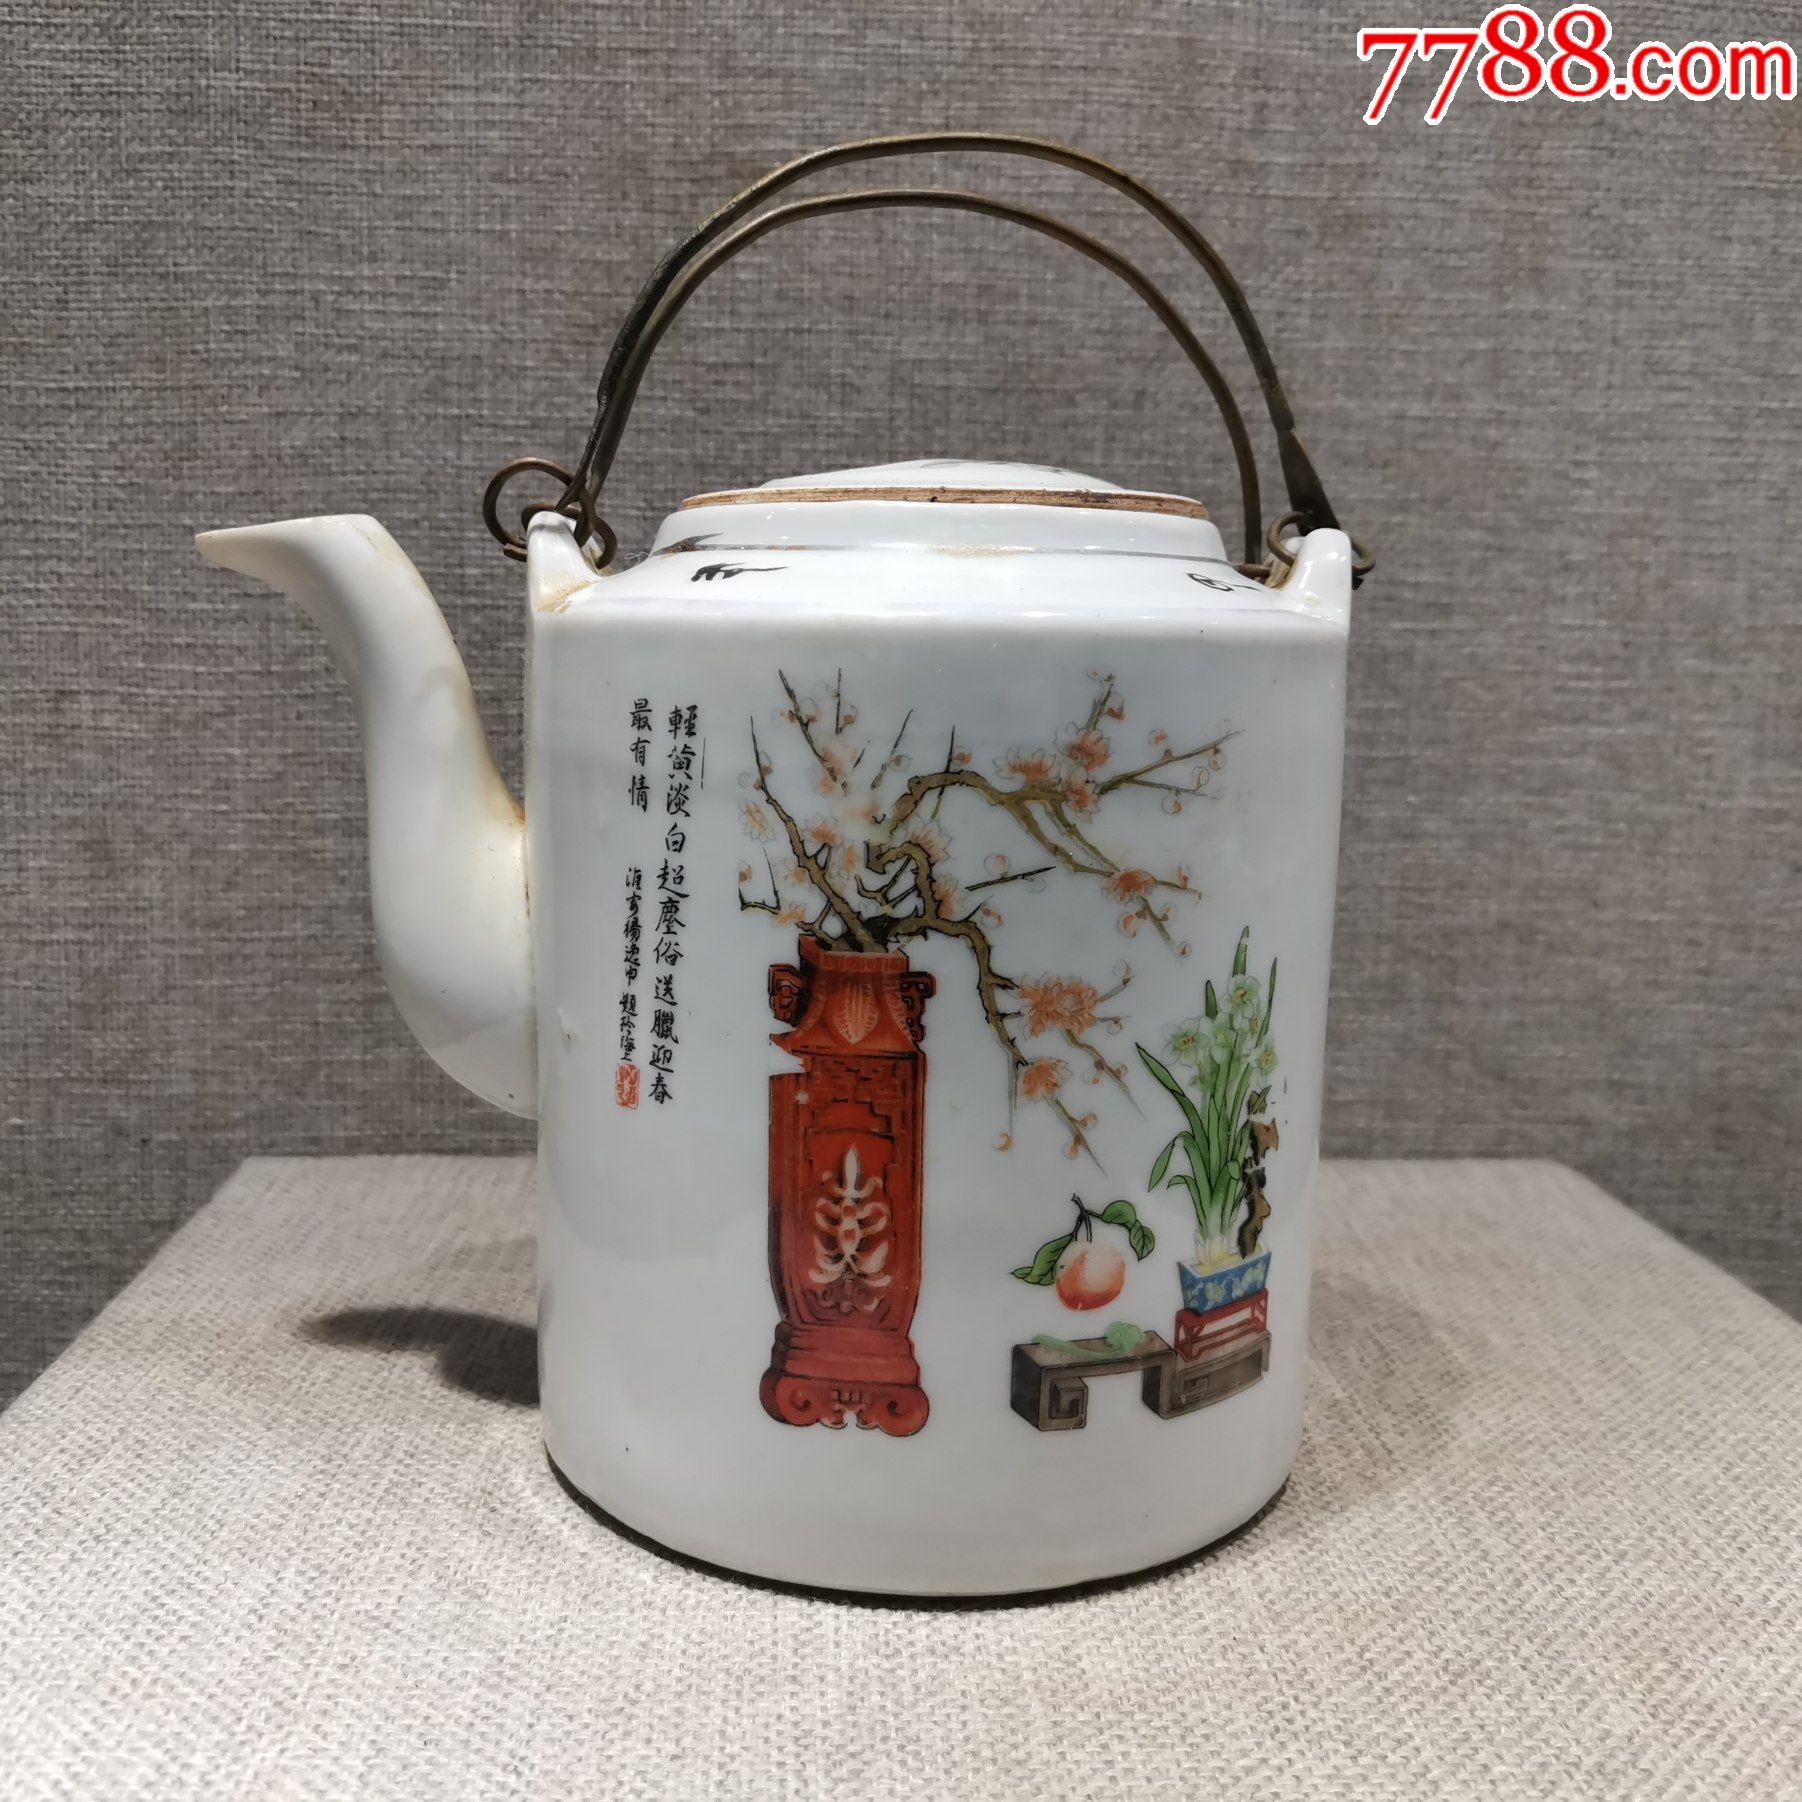 老茶壶古玩摆件收藏民国民俗老物件八股图茶壶包老保真